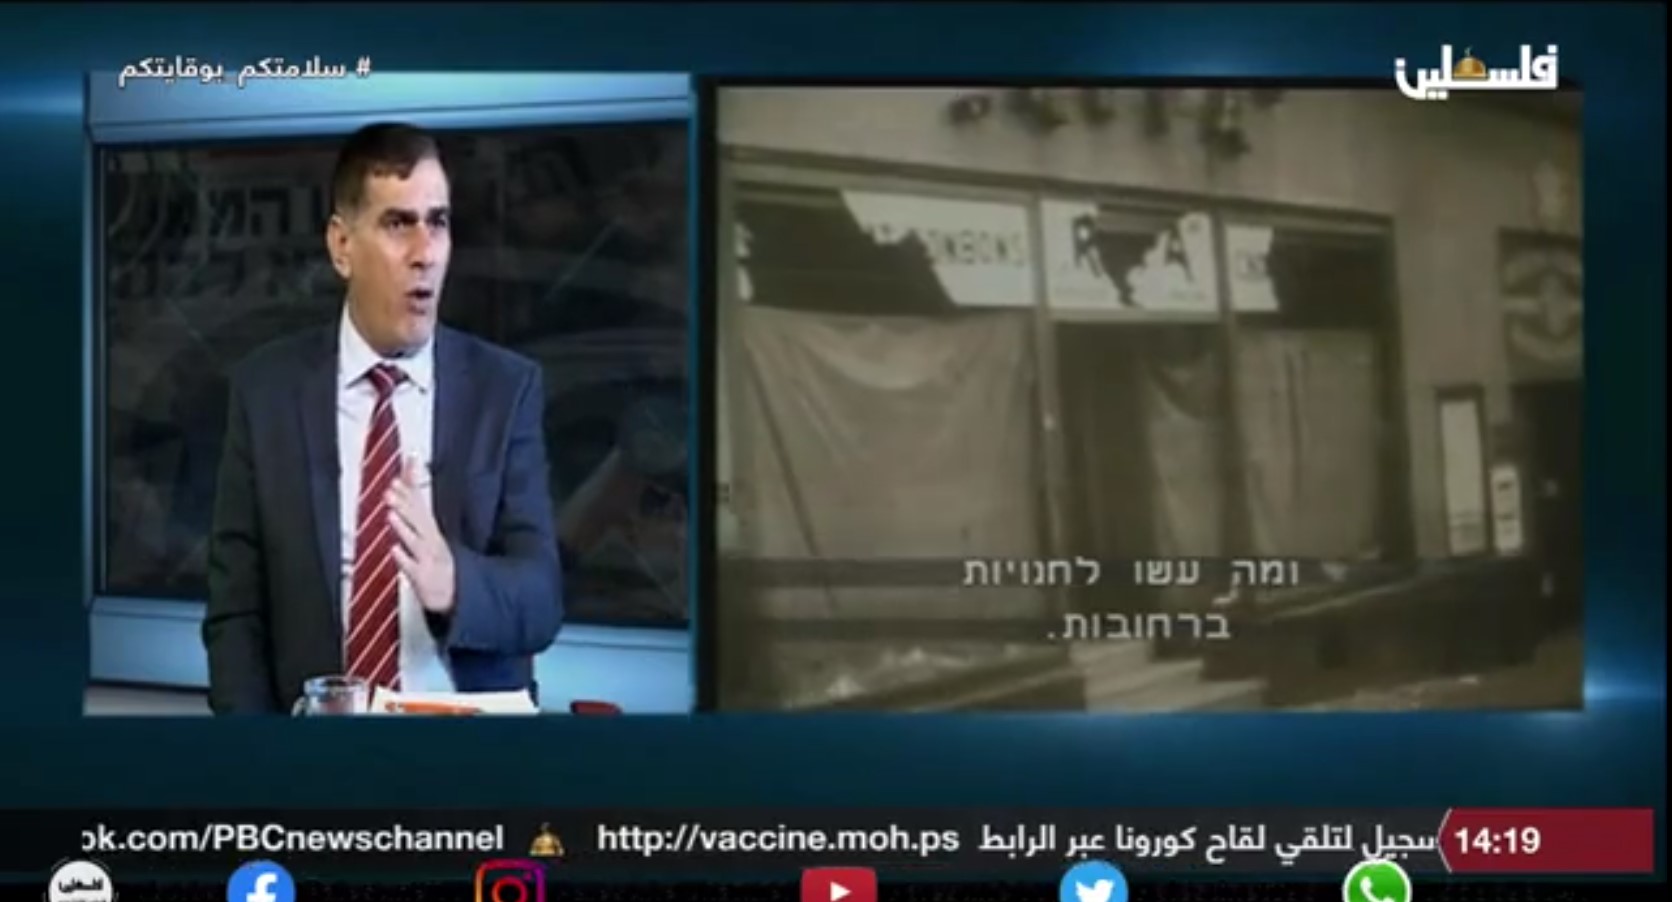 PA-Fernsehen setzt die israelische Parlamentarier mit Eichmann gleich [Video]